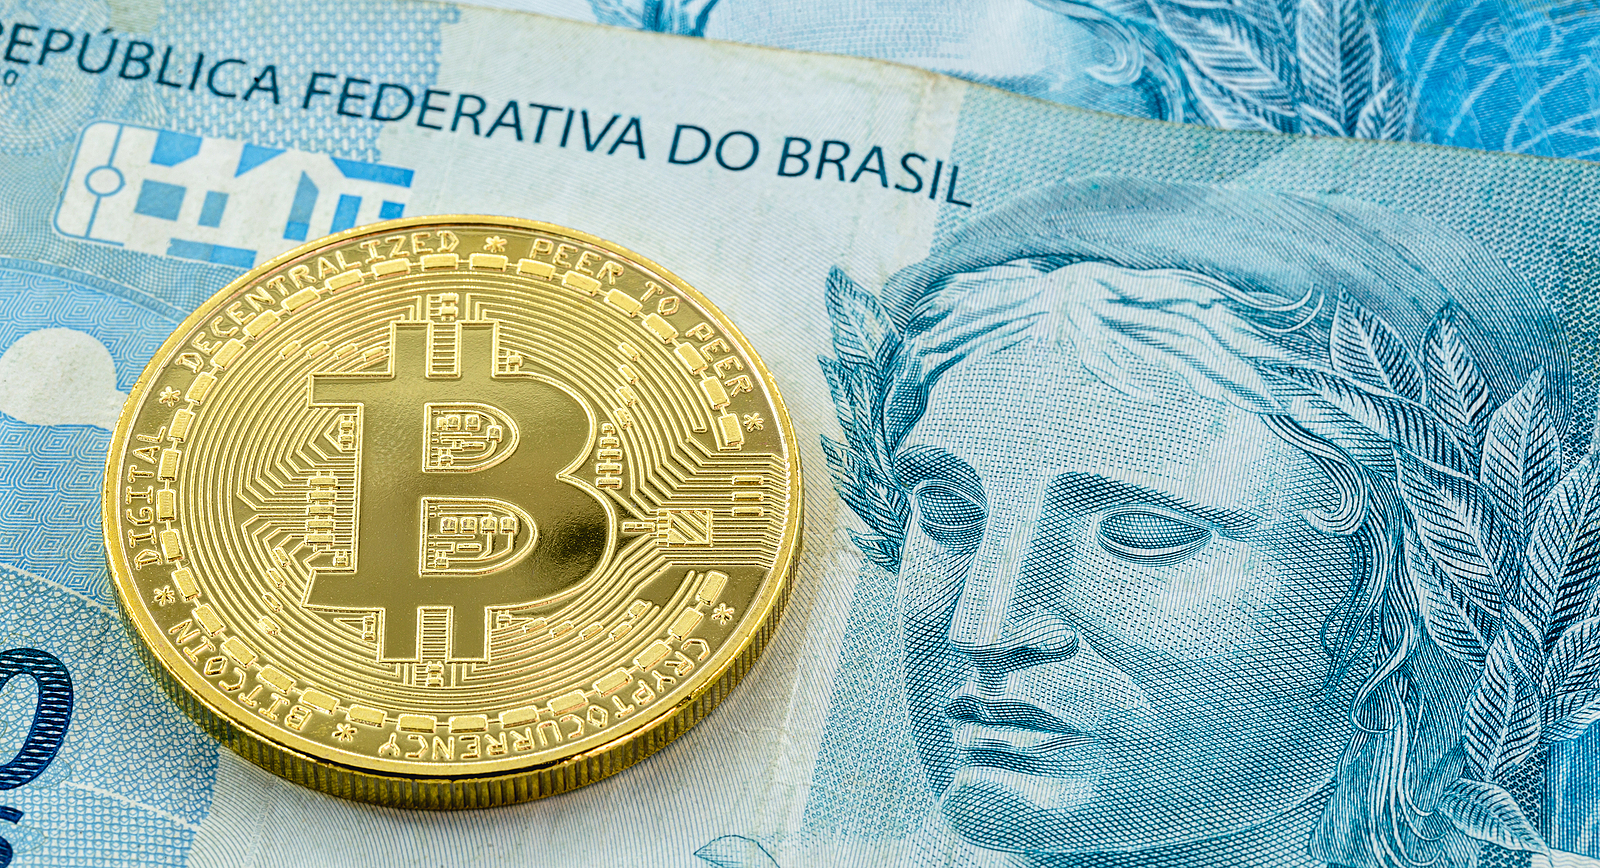 Trio tenta comprar R$1M em criptomoedas com notas falsas e é preso no Rio